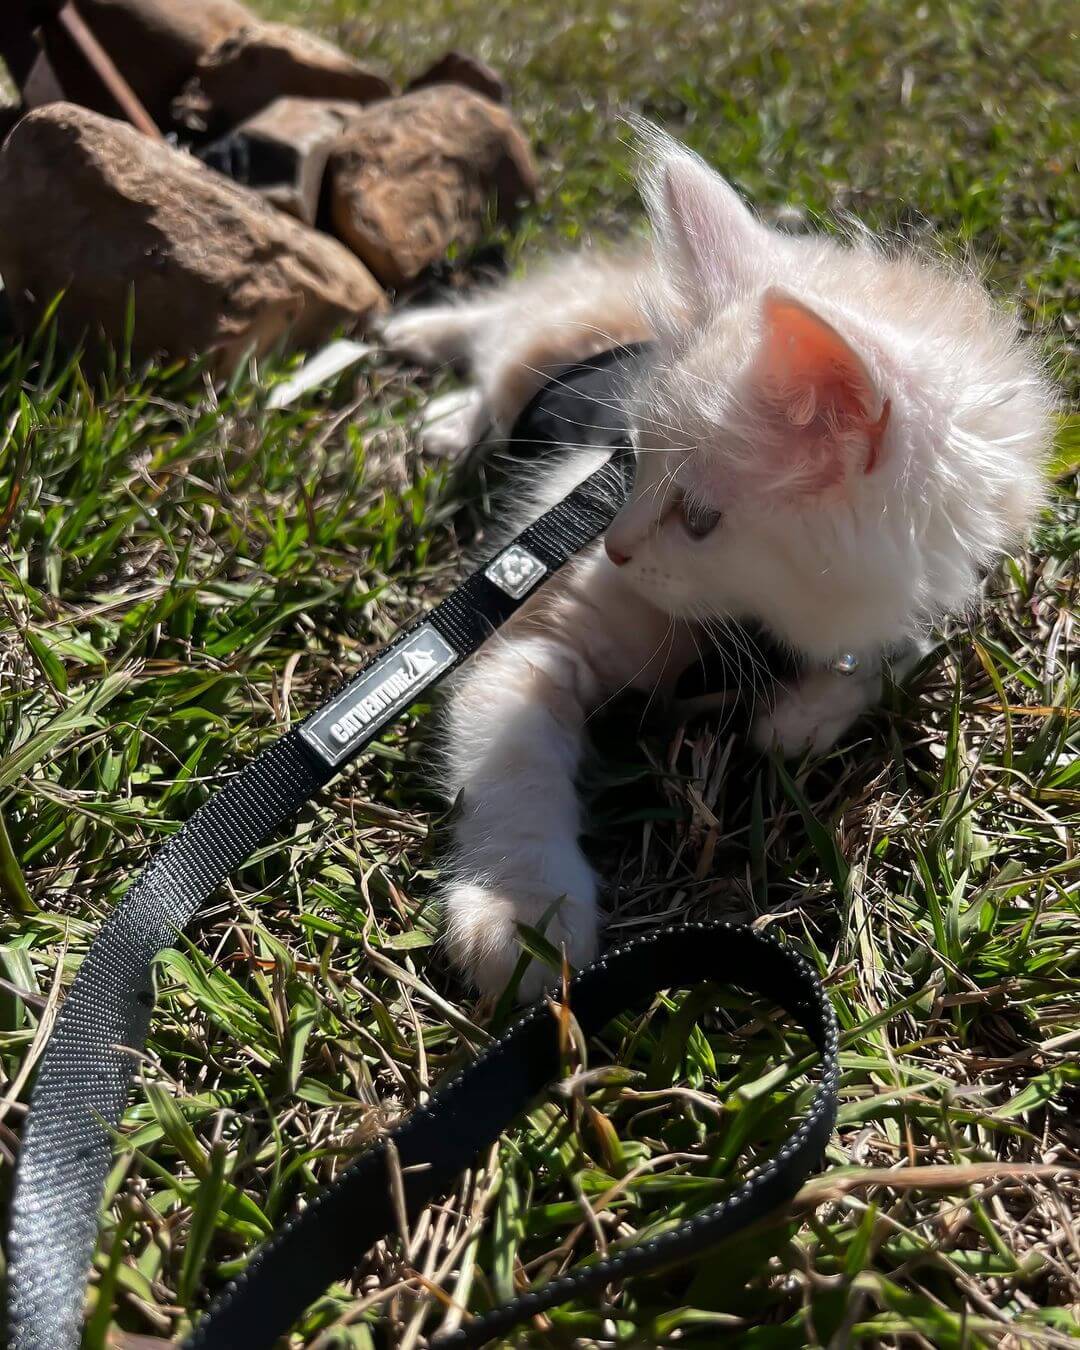 kitten on grass in harness